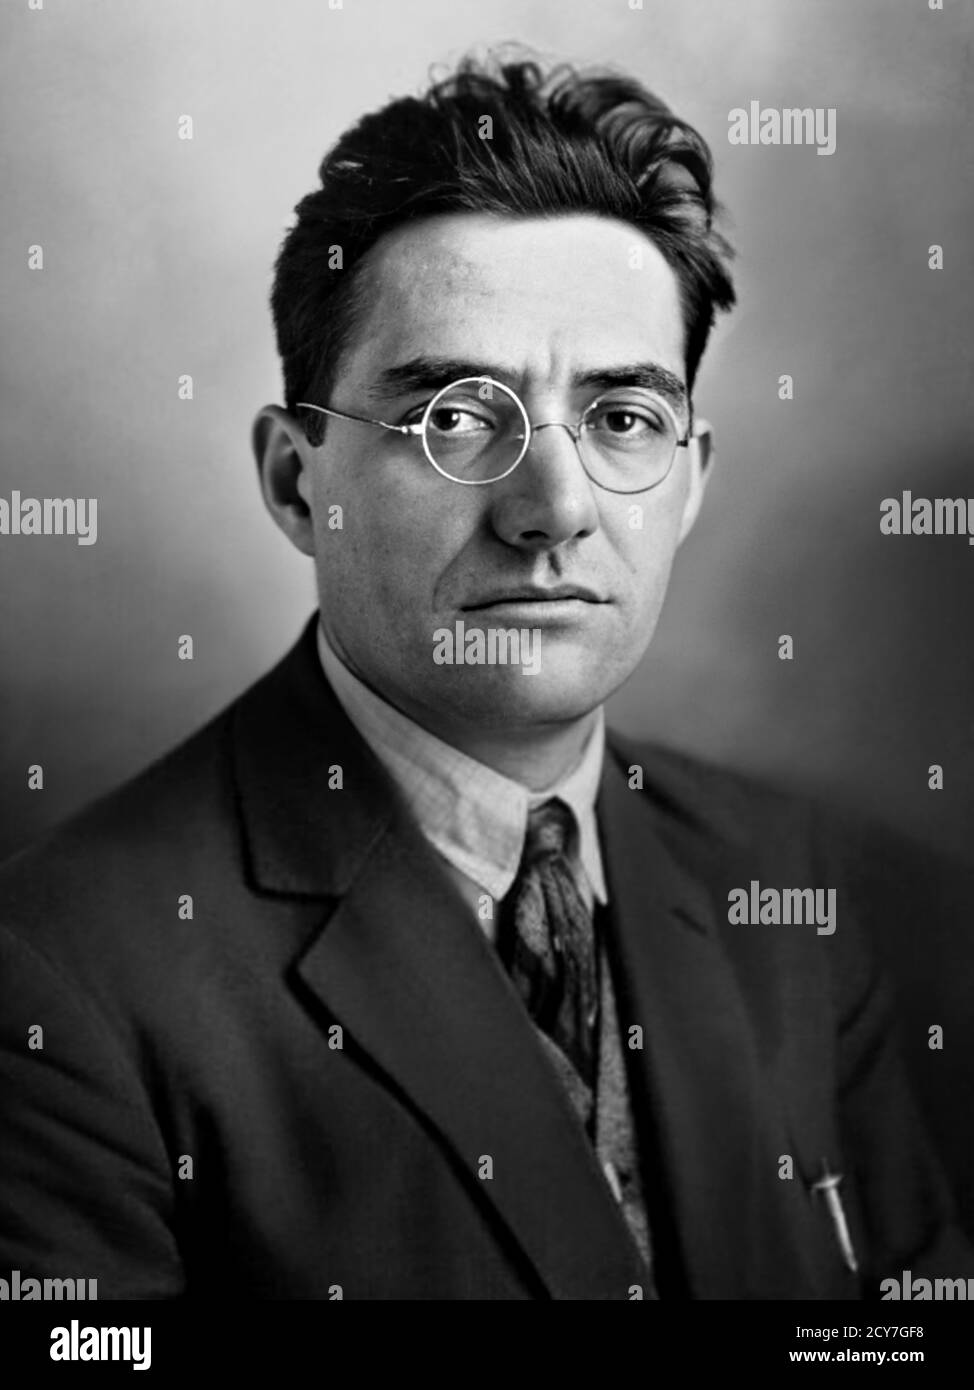 1927 c., Parigi, FRANCIA: IL politico e giornalista francese JACQUES DORIOT ( 1898 - 1945 ). Fotografo sconosciuto . - POLITICO - POLITICA - POLITICA - FRANCIA - foto storiche - STORIA - ritratto - ritratto - lente - occhiali da vista - GIORNALISMO - GIORNALISTA - GIORNALISMO - GIORNALISTA - TIE - cravatta --- ARCHIVIO GBB Foto Stock